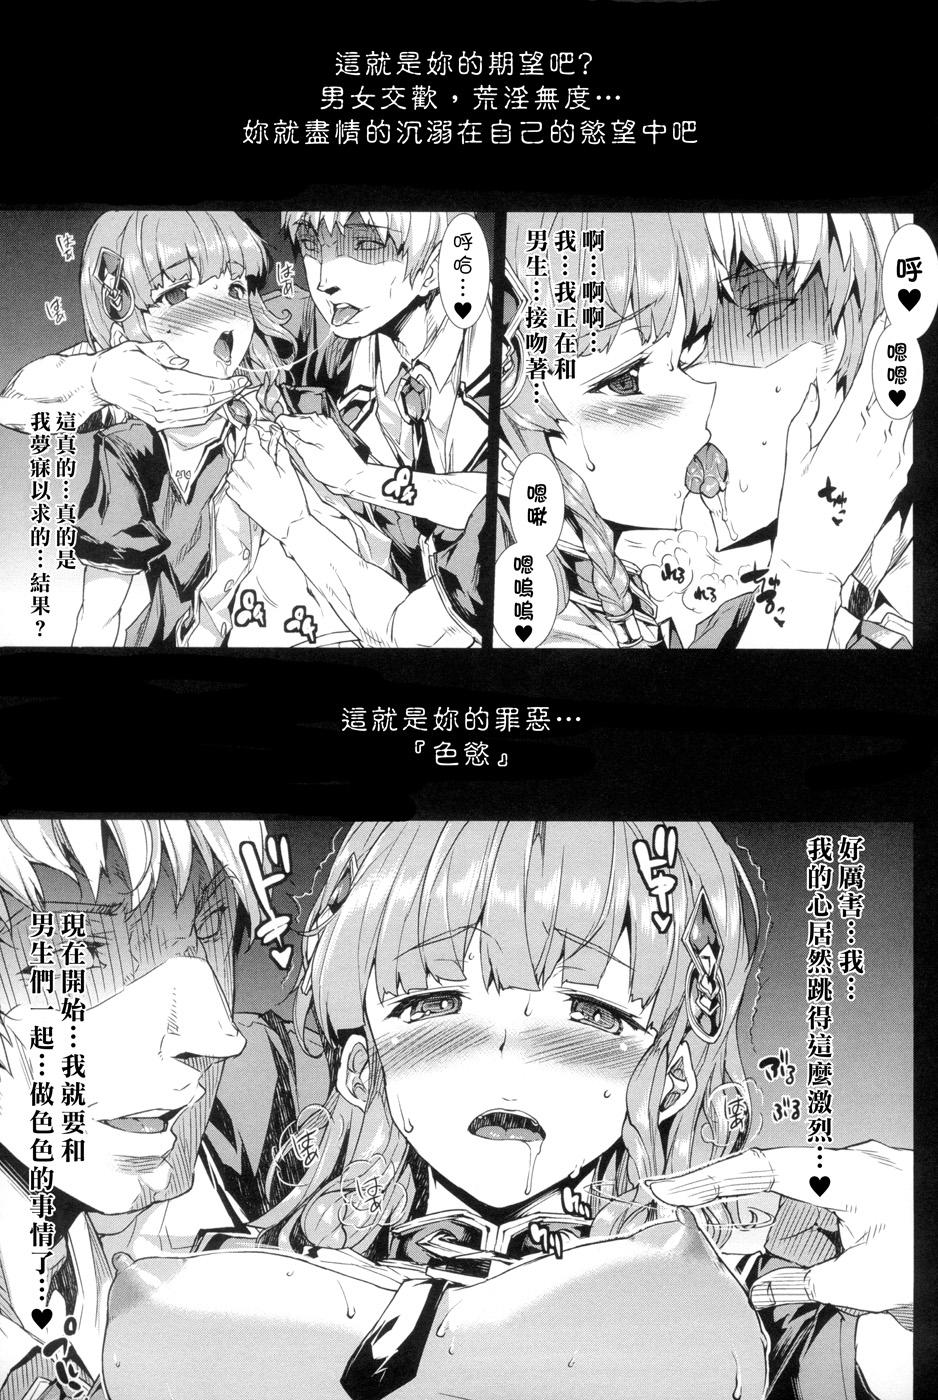 [Erect Sawaru] Shinkyoku no Grimoire -PANDRA saga 2nd story- Ch. 1-4 [Chinese] 35